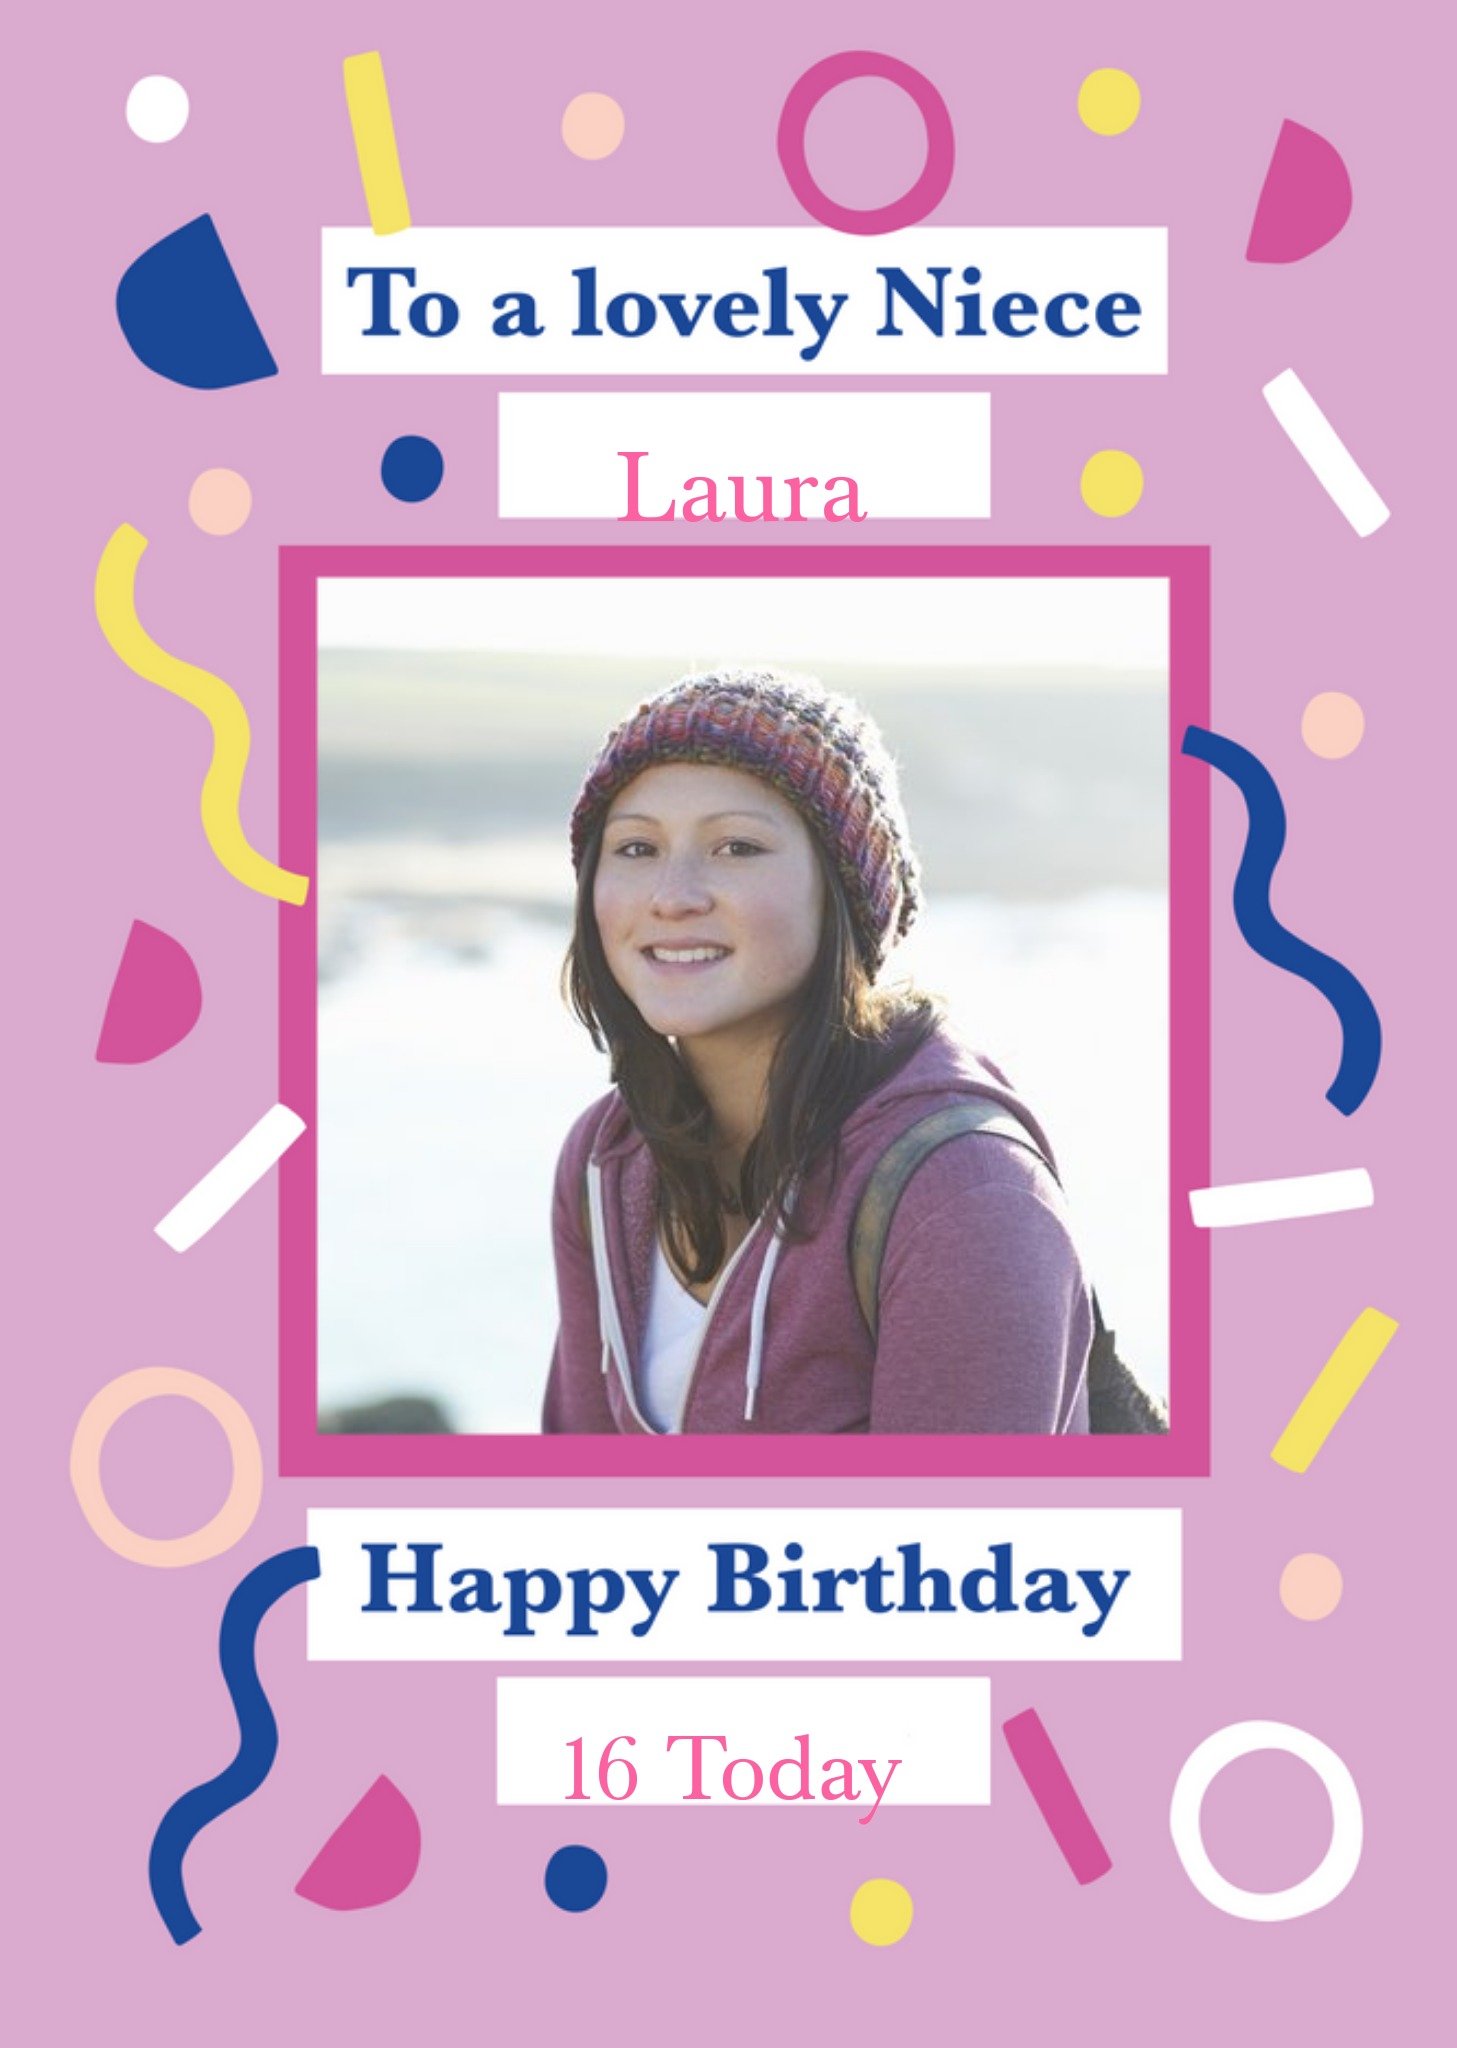 Moonpig Helen Butler Photo Upload Fun Niece Birthday Card Ecard